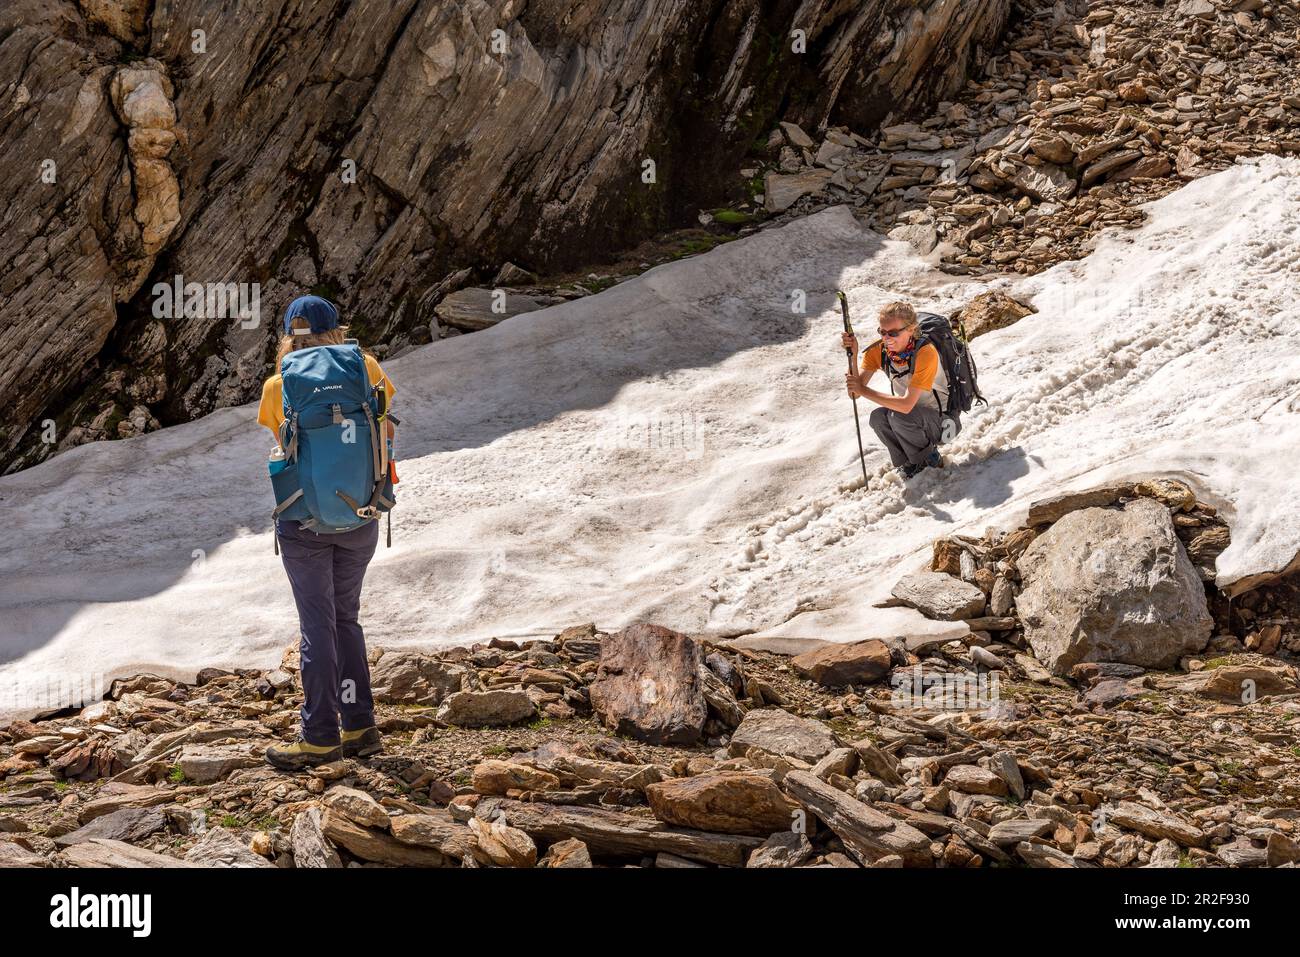 Wanderin scivola abilmente sulla neve vecchia, Trekking del Laghetti Alpini, Ticino, Svizzera Foto Stock